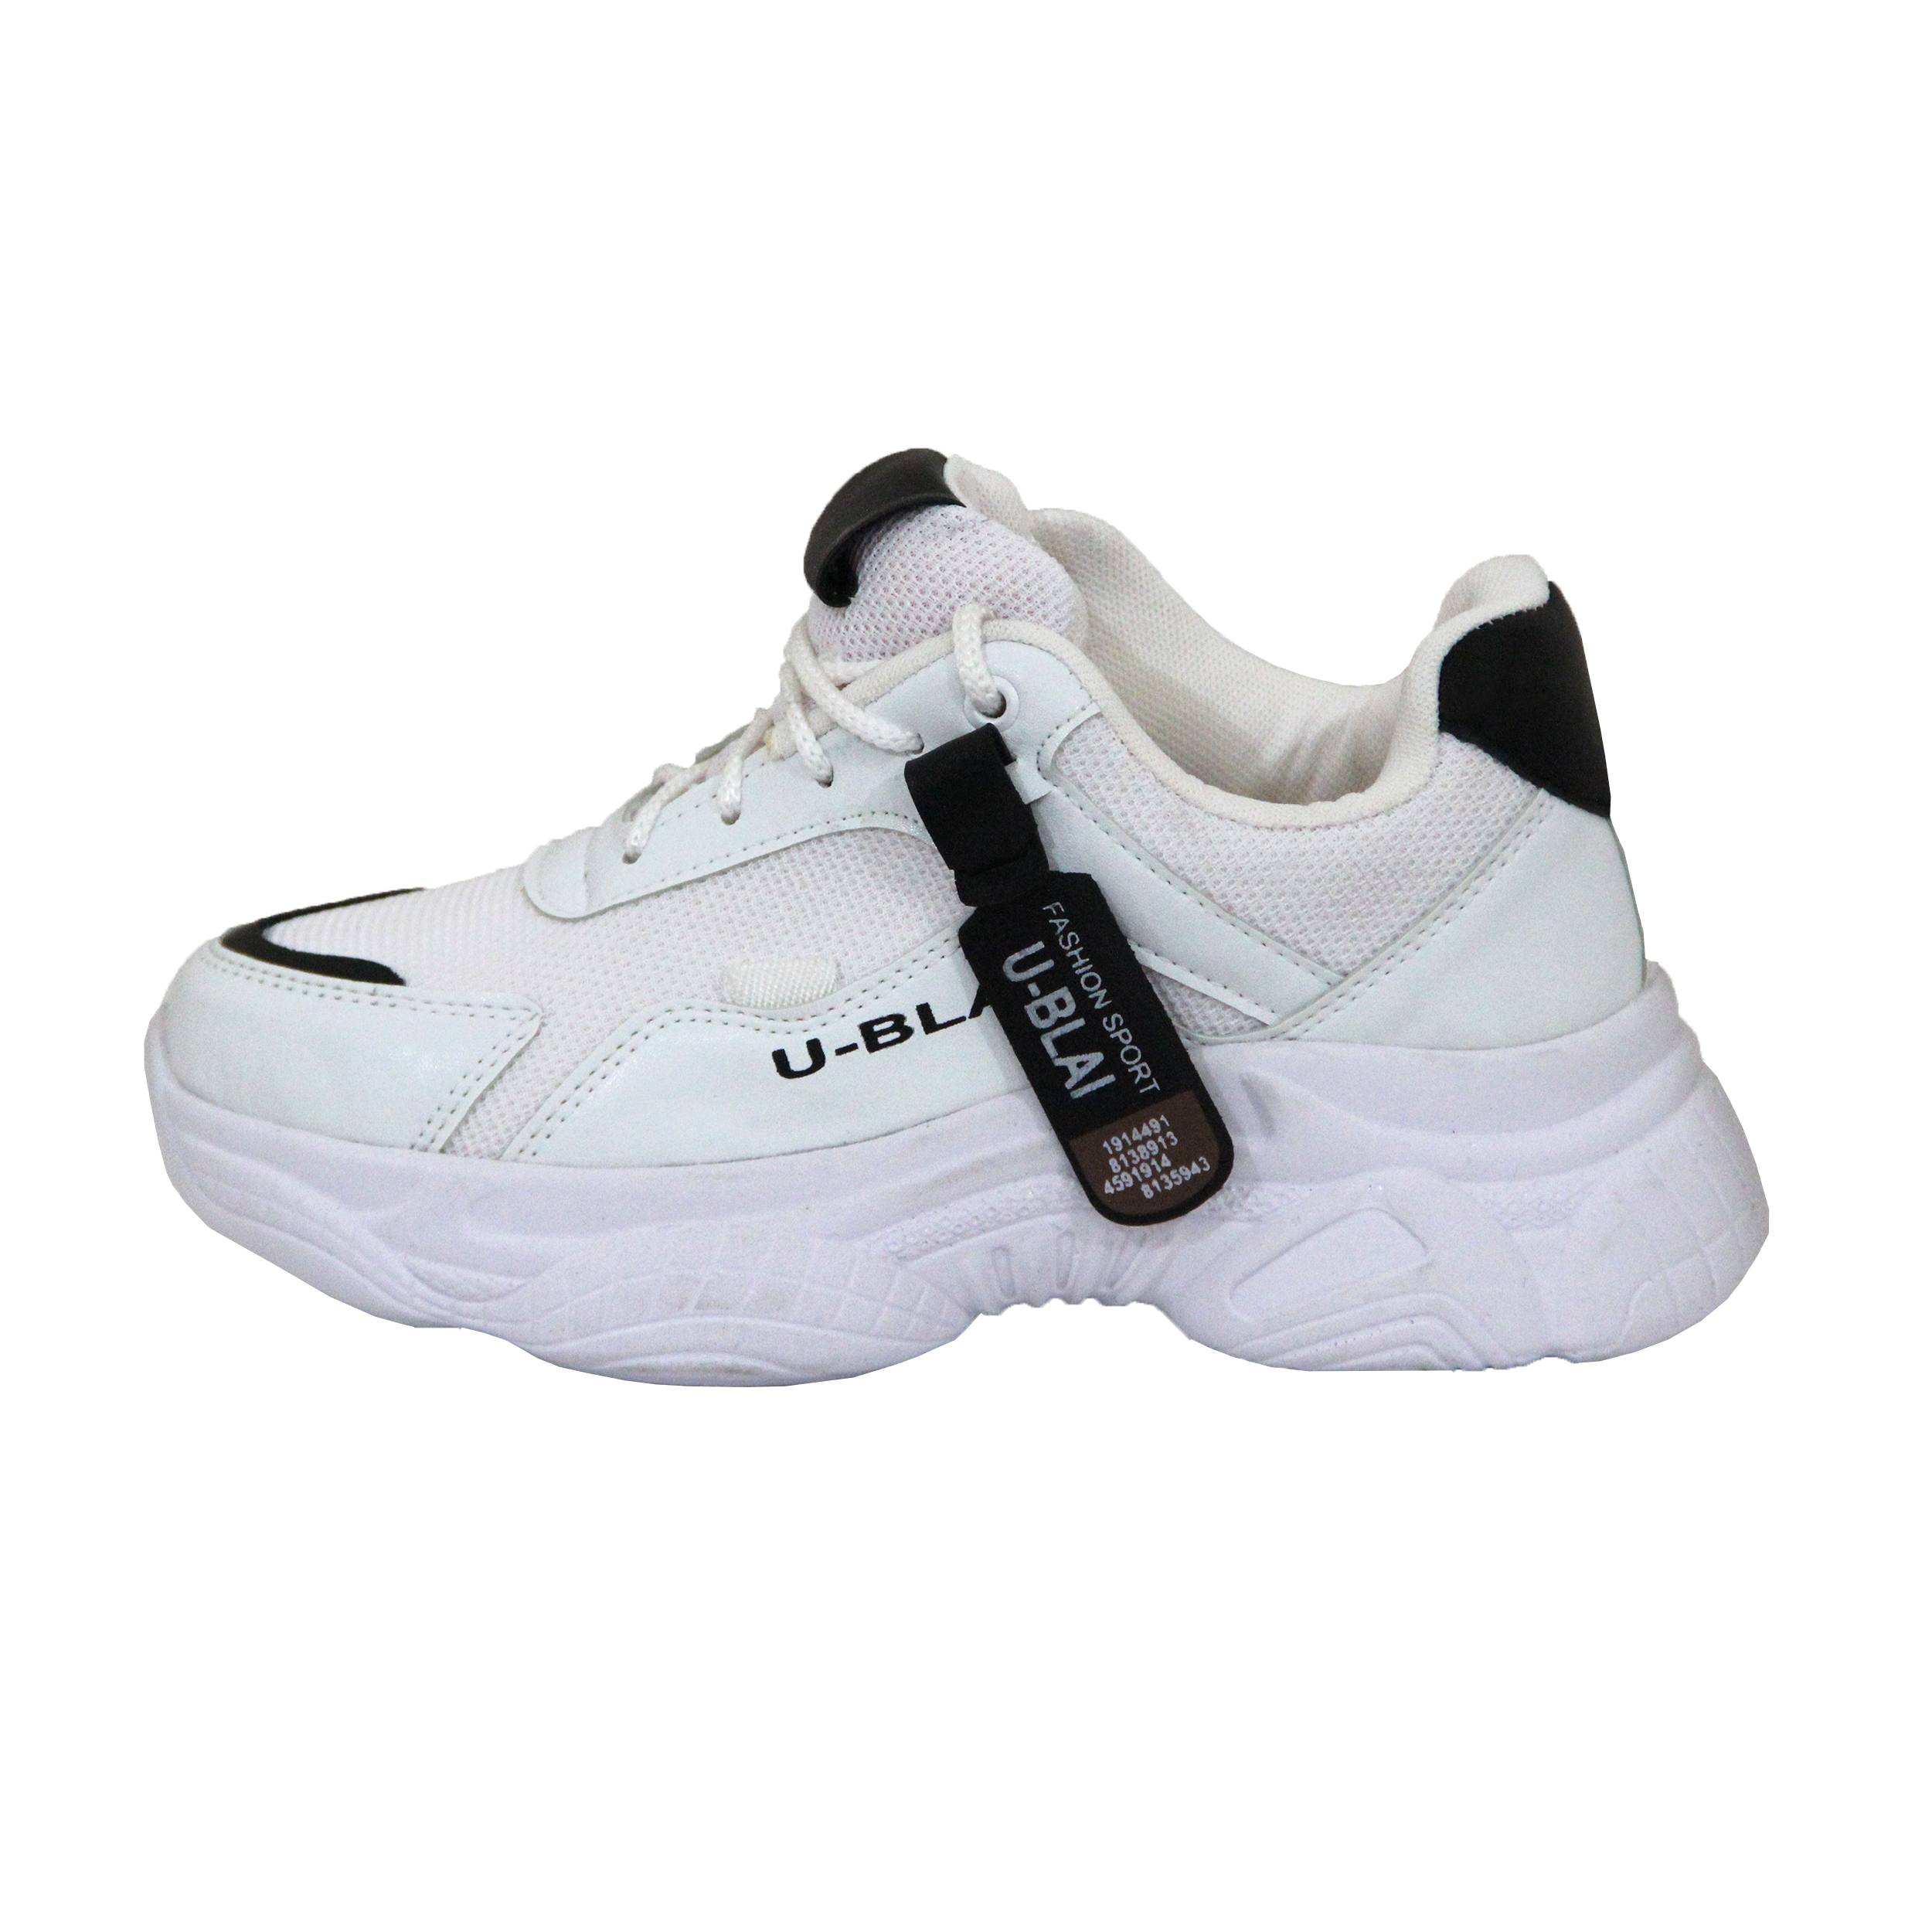  کفش مخصوص پیاده روی زنانه کد 4-39993